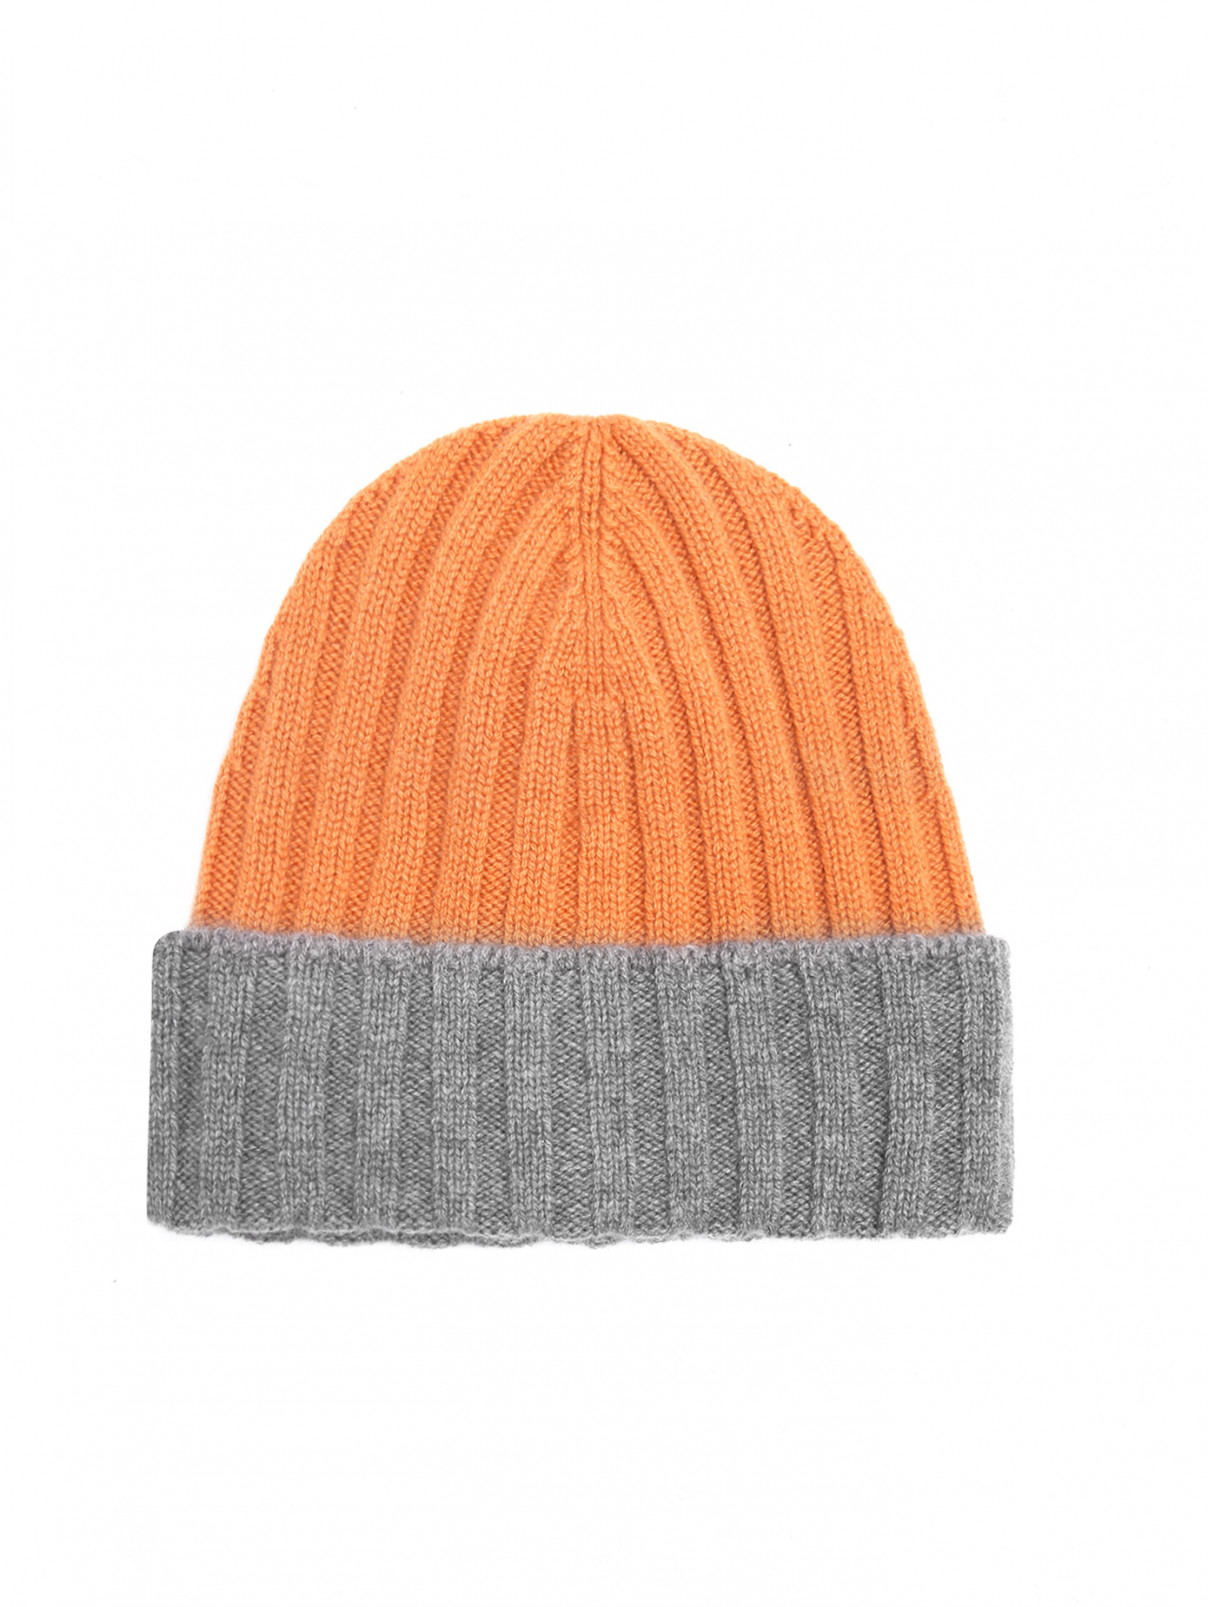 Комбинированная шапка из кашемира Gran Sasso  –  Общий вид  – Цвет:  Оранжевый